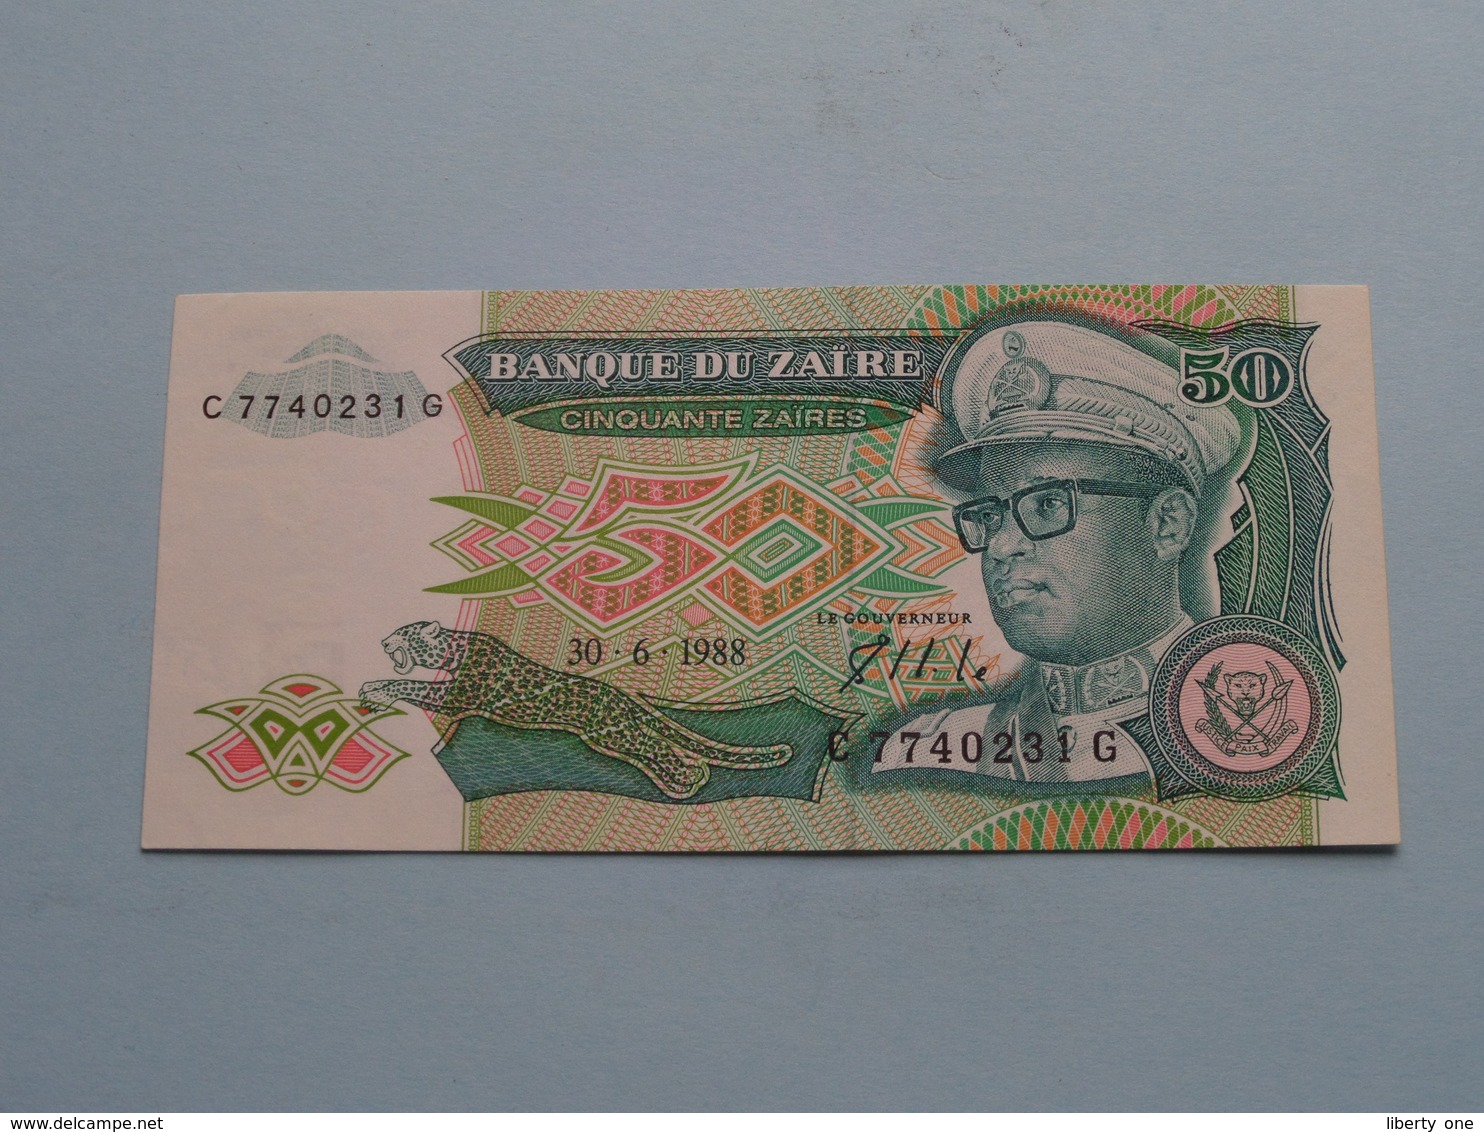 Cinquante Zaïres 50 ( C 7740231 G ) 30-6-1988 Banque Du ZAIRE ( For Grade, Please See Photo ) ! - Zaire